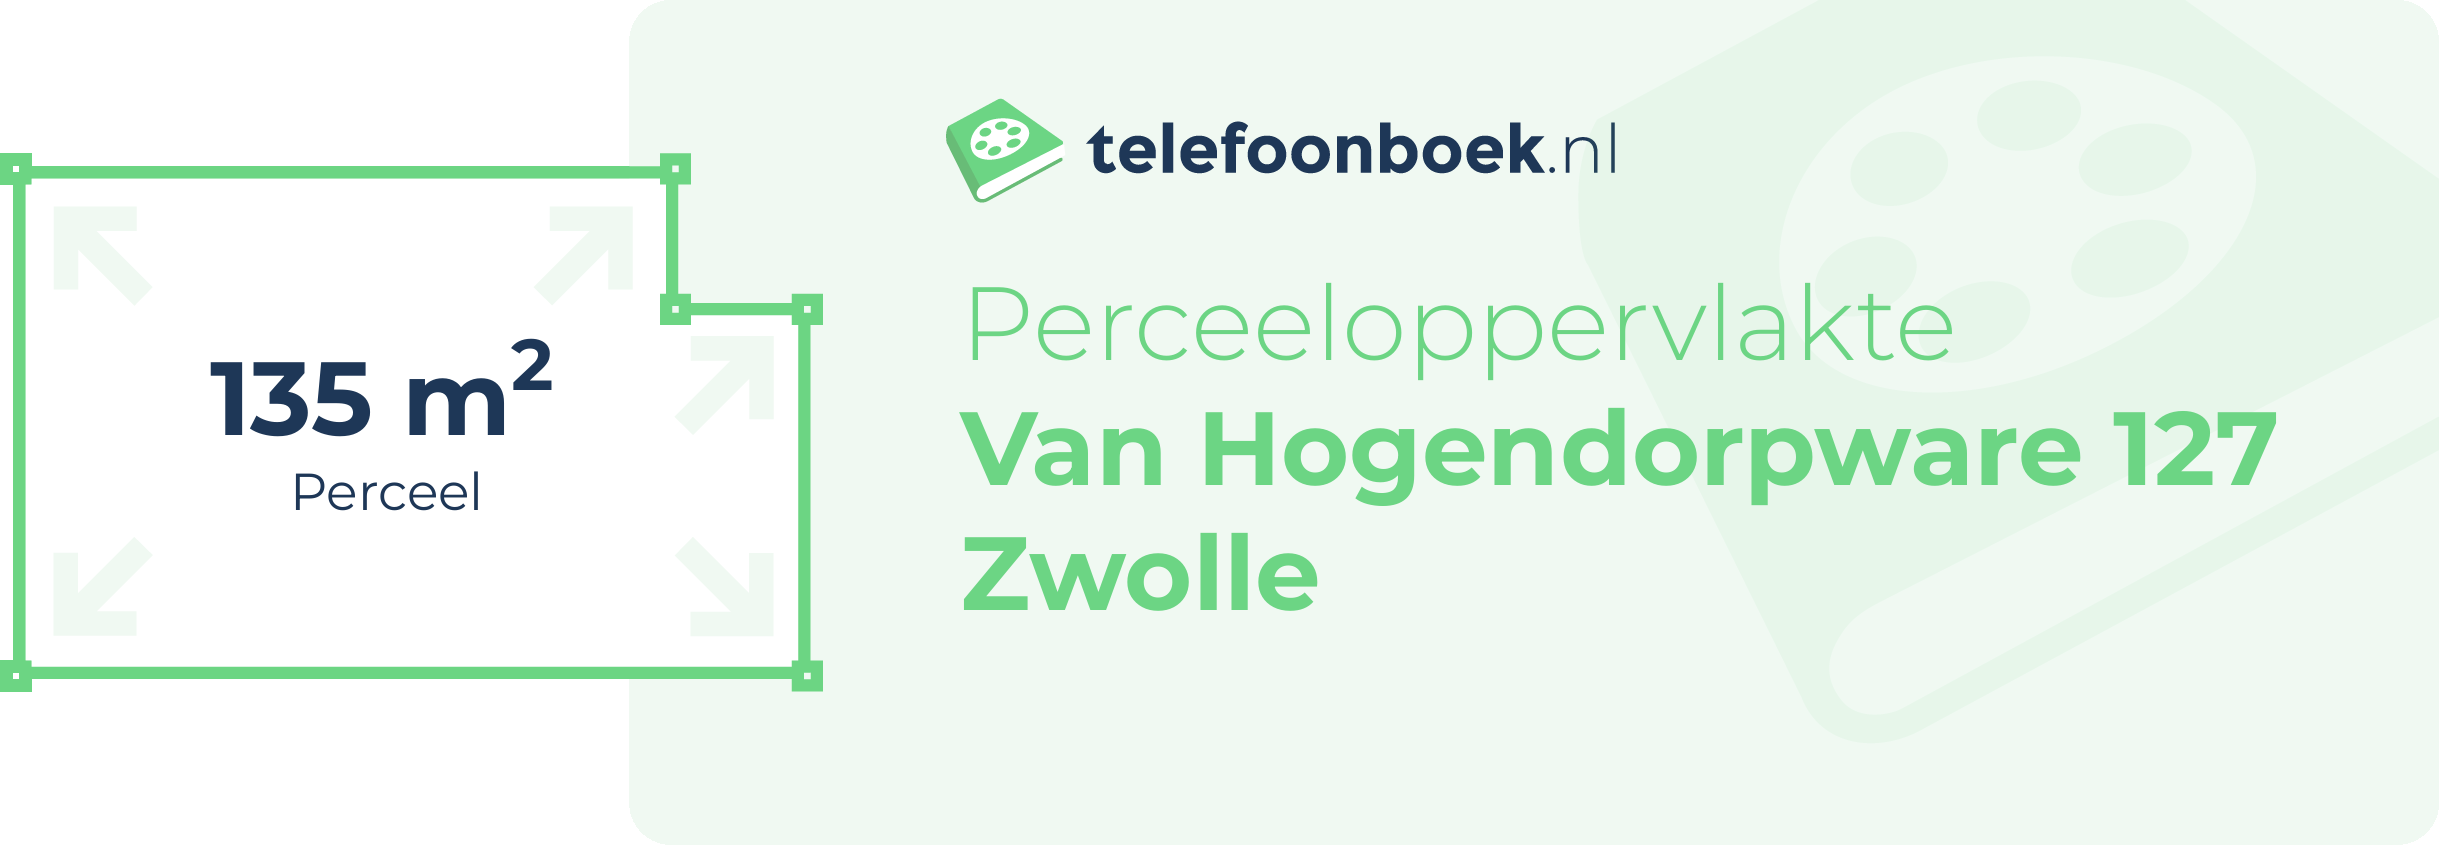 Perceeloppervlakte Van Hogendorpware 127 Zwolle